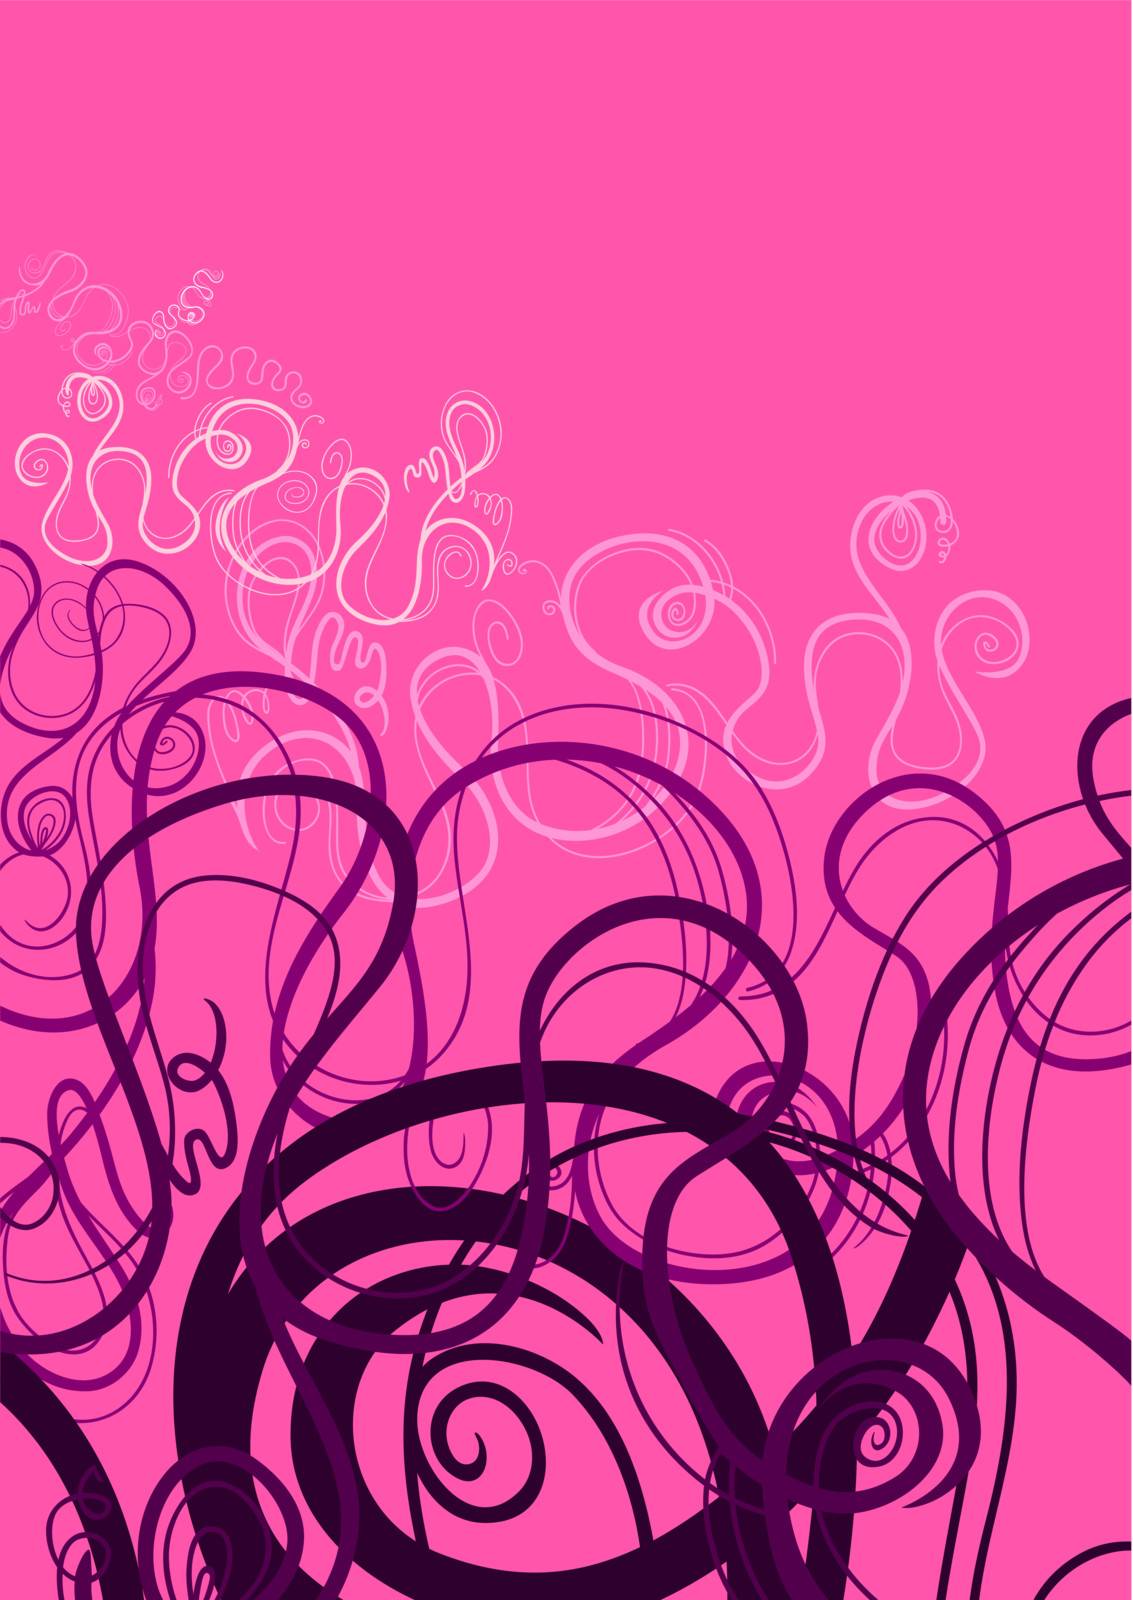 Pink and Purple Abstract Swirl Ornament by izakowski